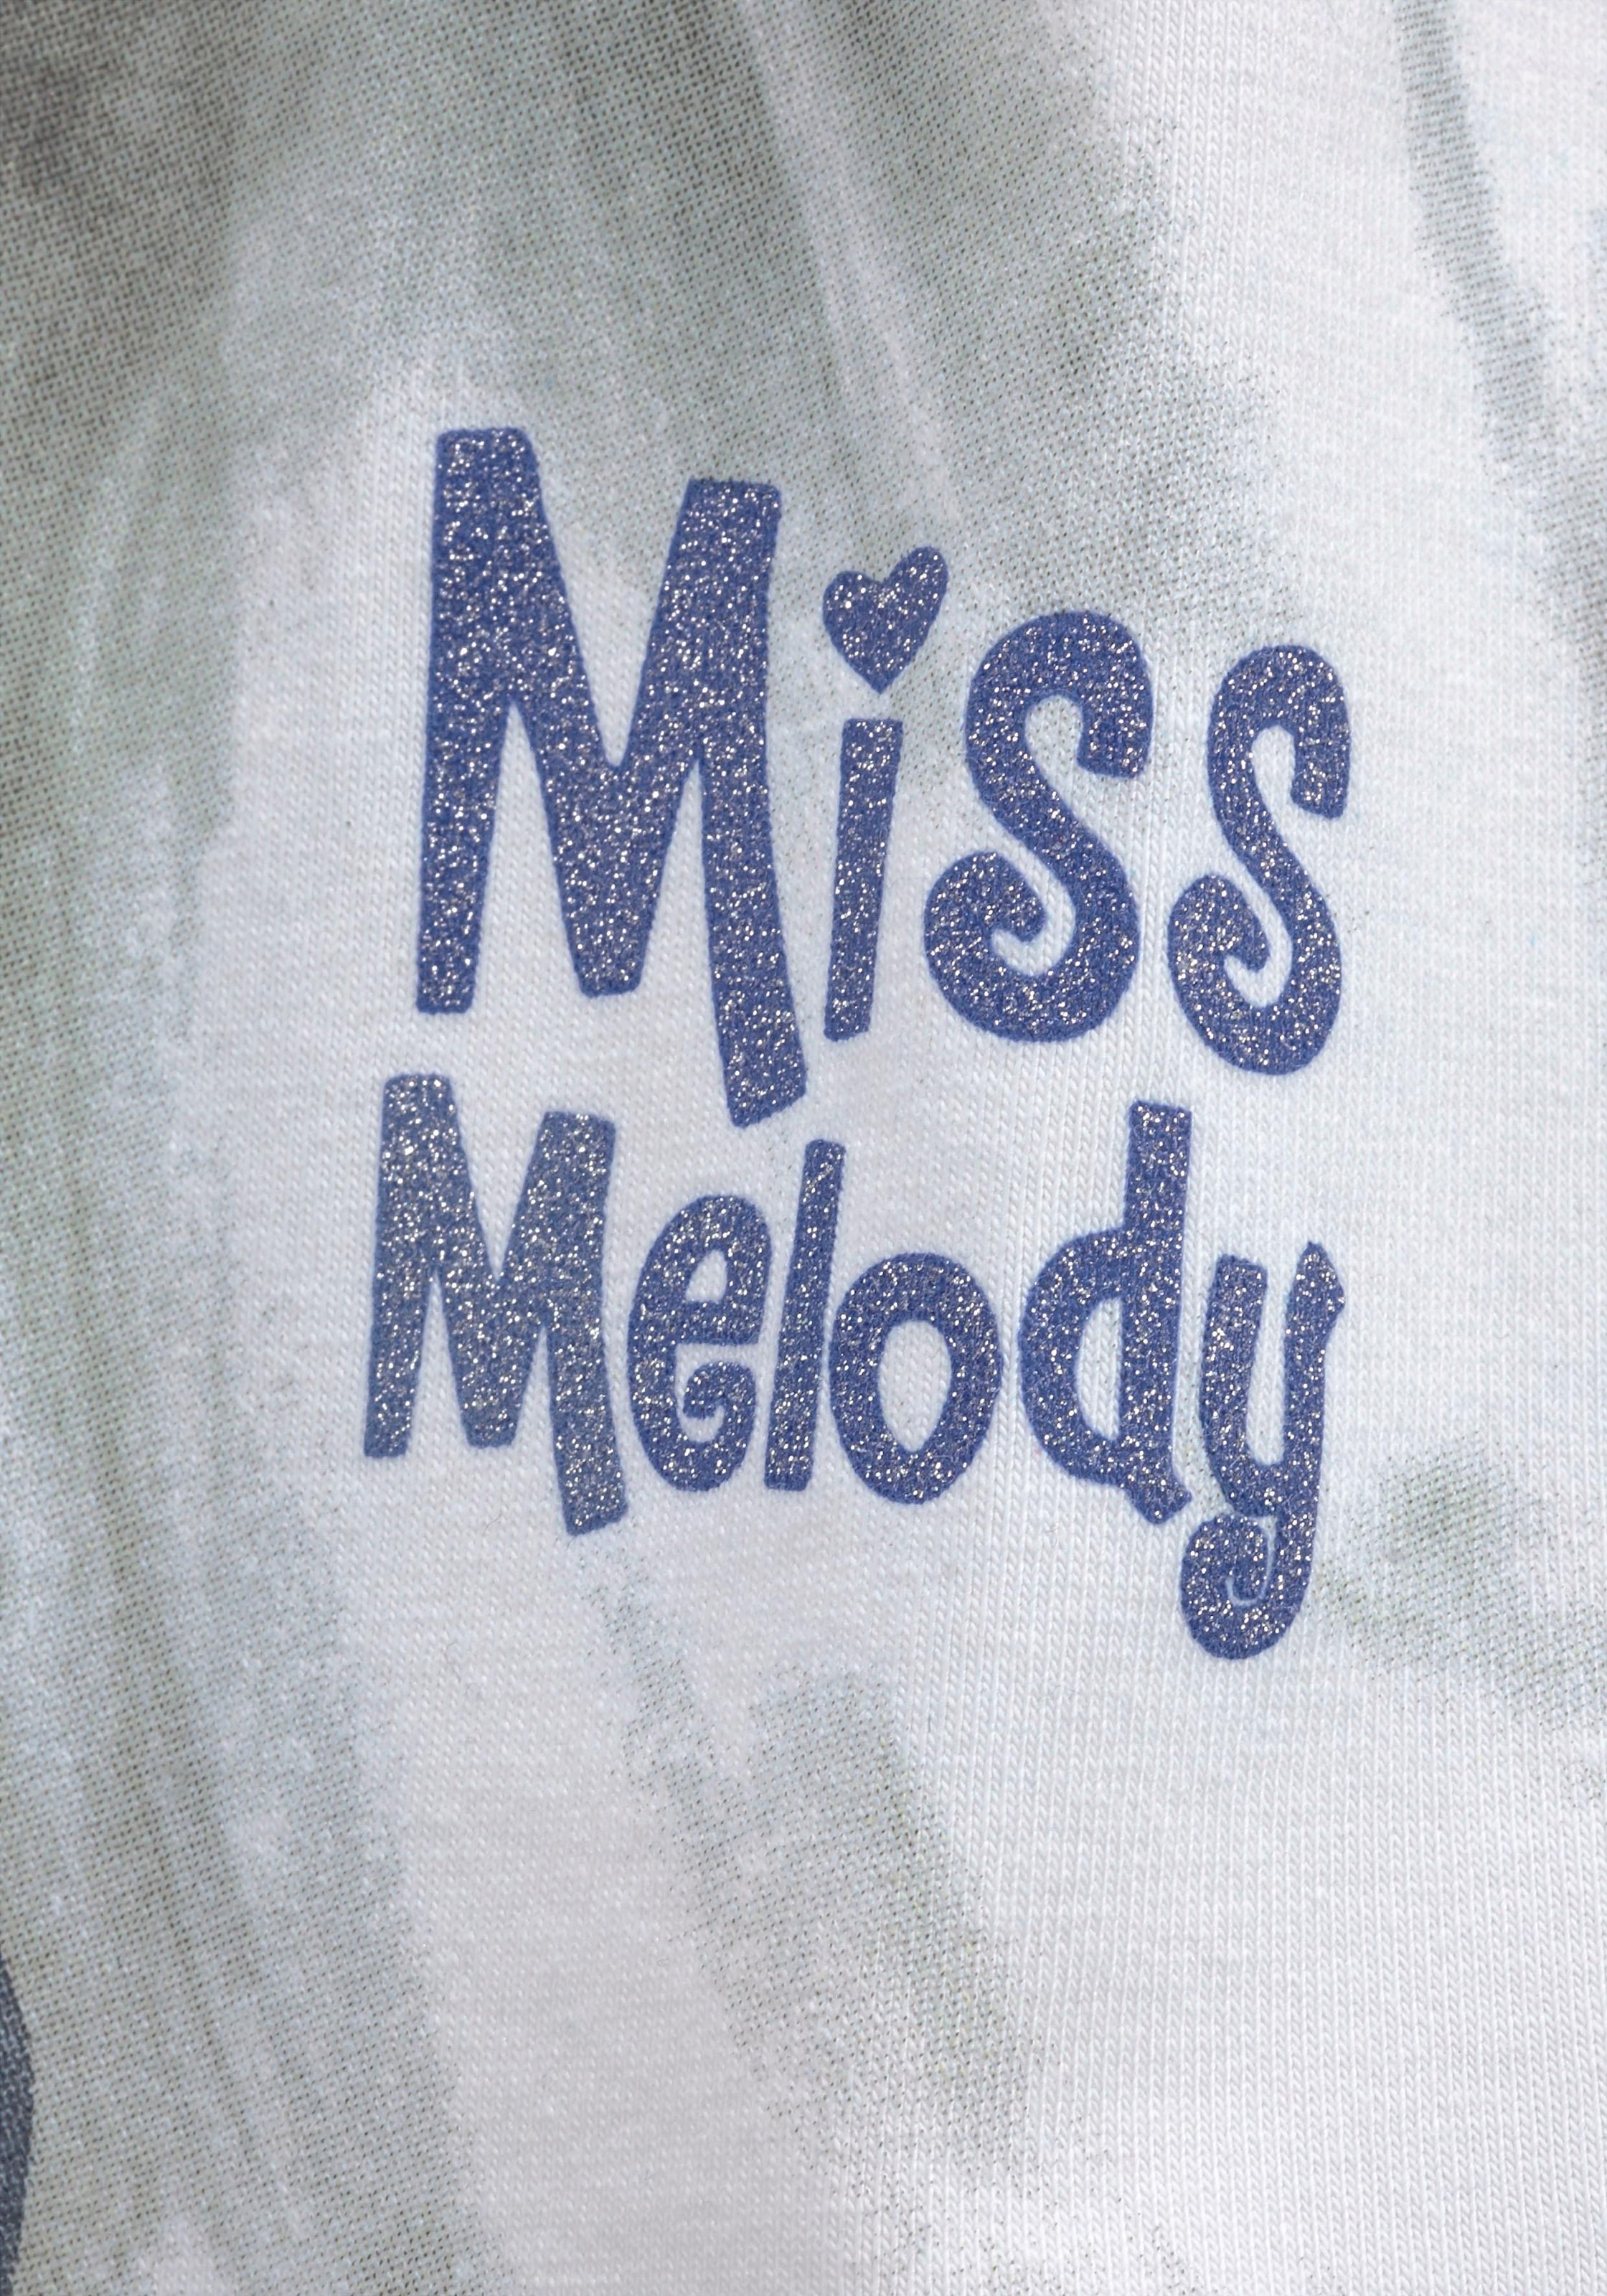 Frontdruck Miss Melody toller bei Glitzereffekt ♕ mit Jerseykleid,